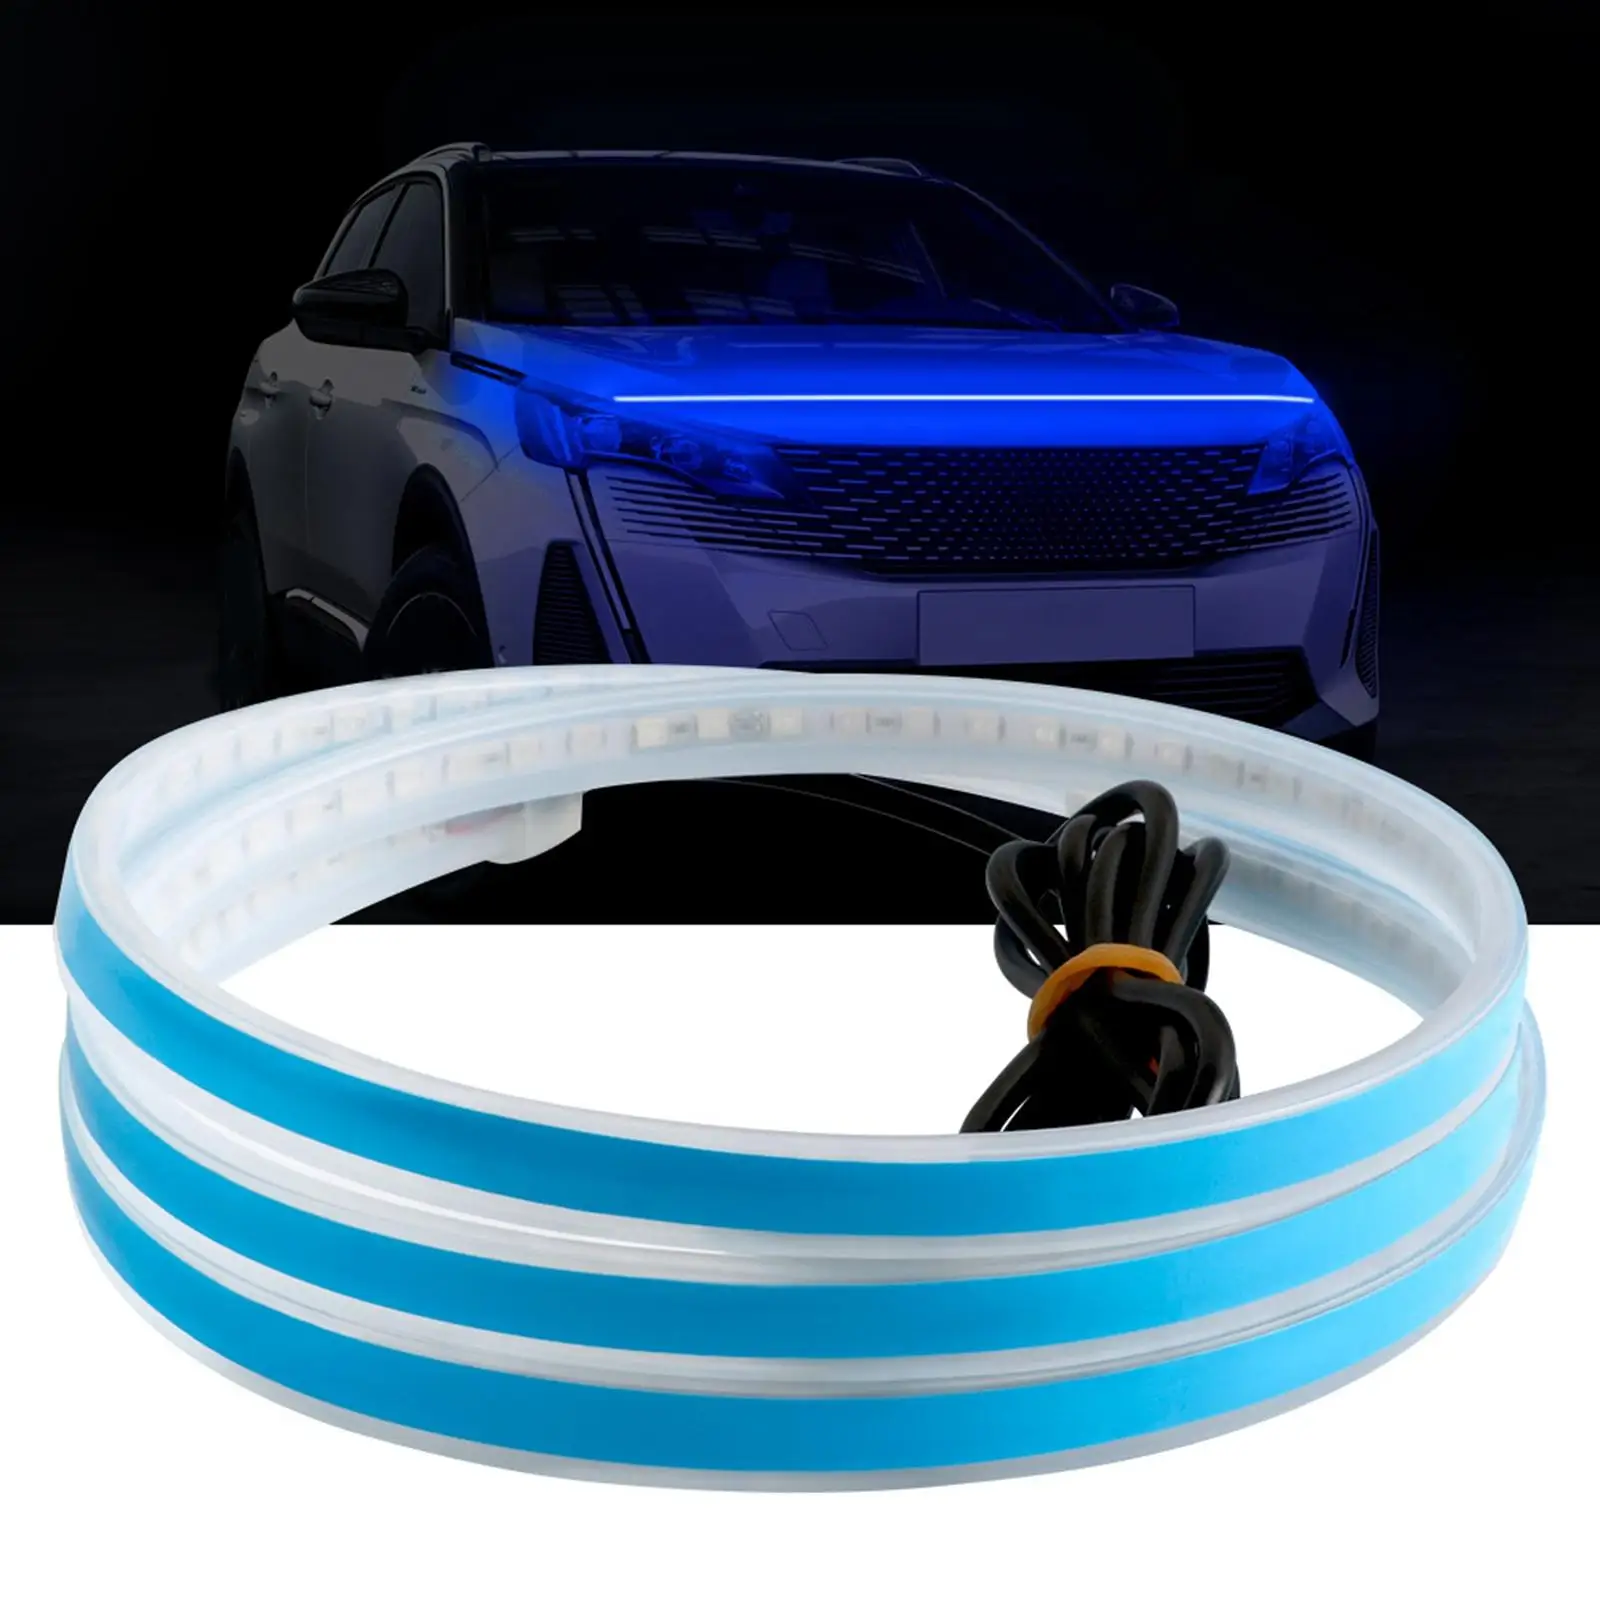 Car Hood Strip Light 12V Car Engine Cover Decoration LED Strip Light for Hood for Car Vehicle Truck SUV